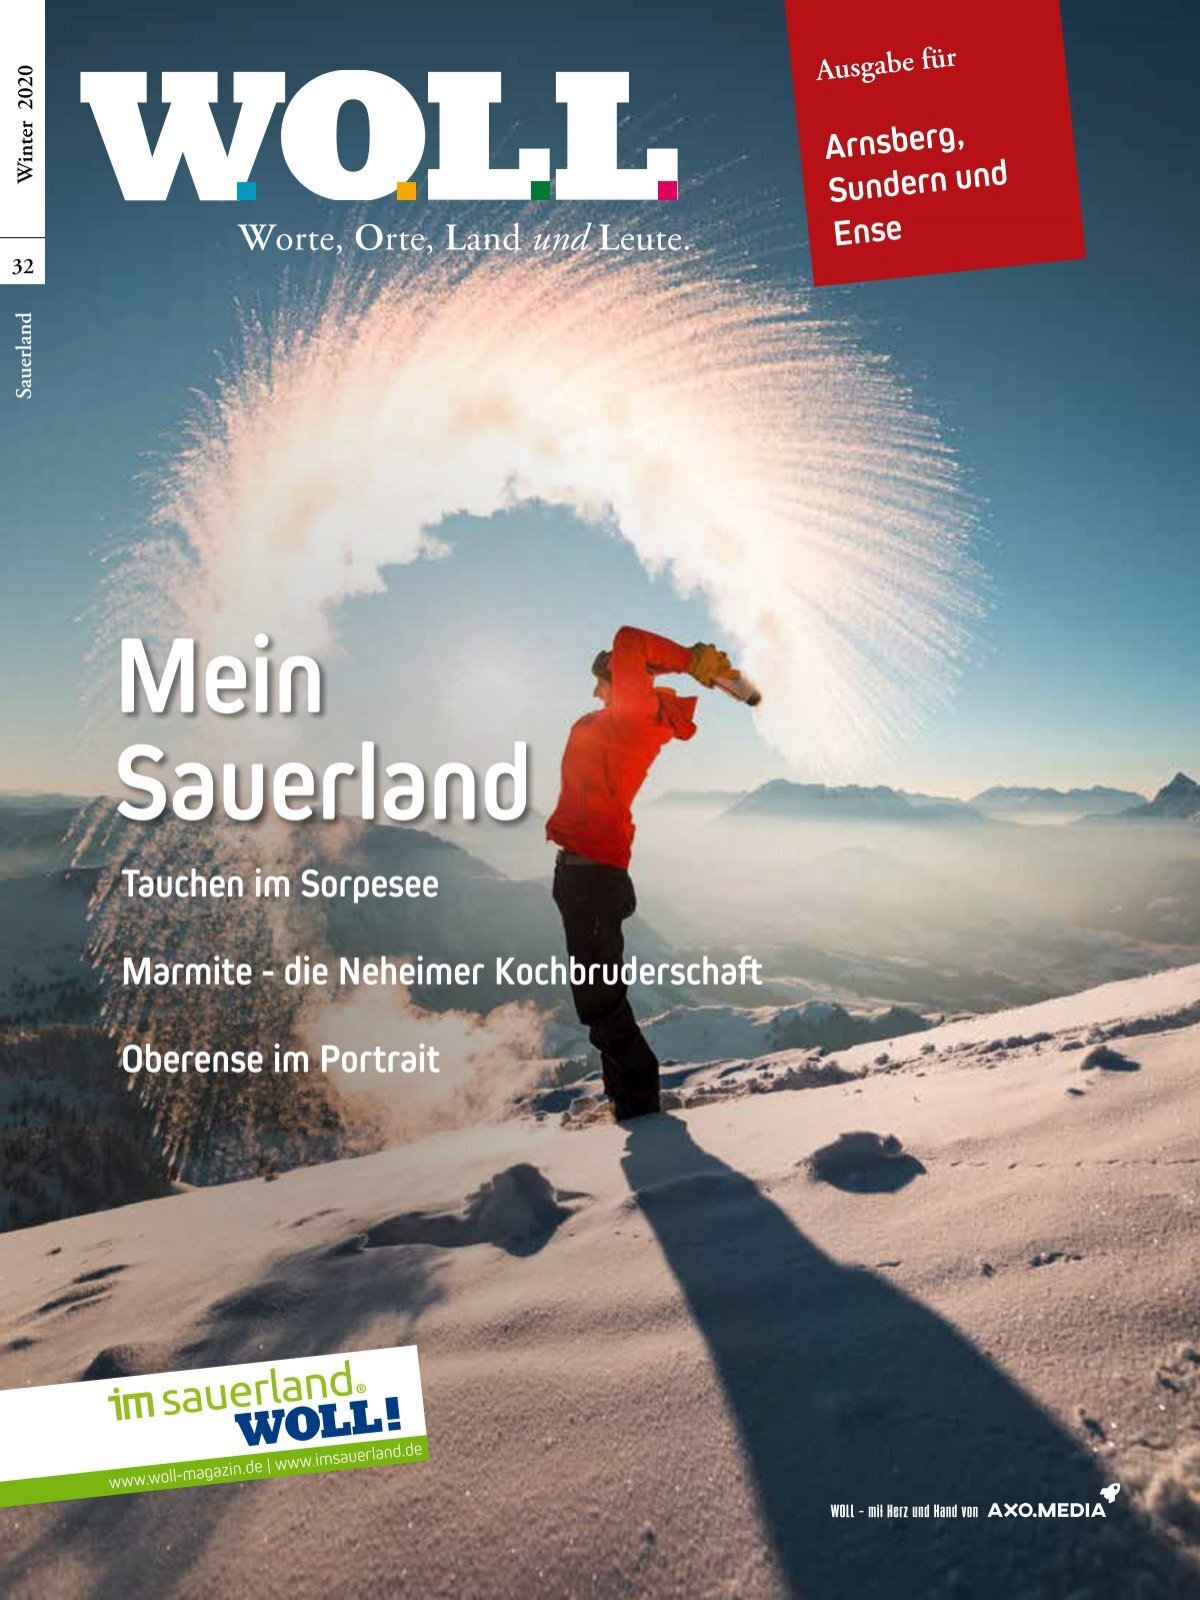 WOLL Magazin 2020.4 Winter I Arnsberg, Sundern, Ense